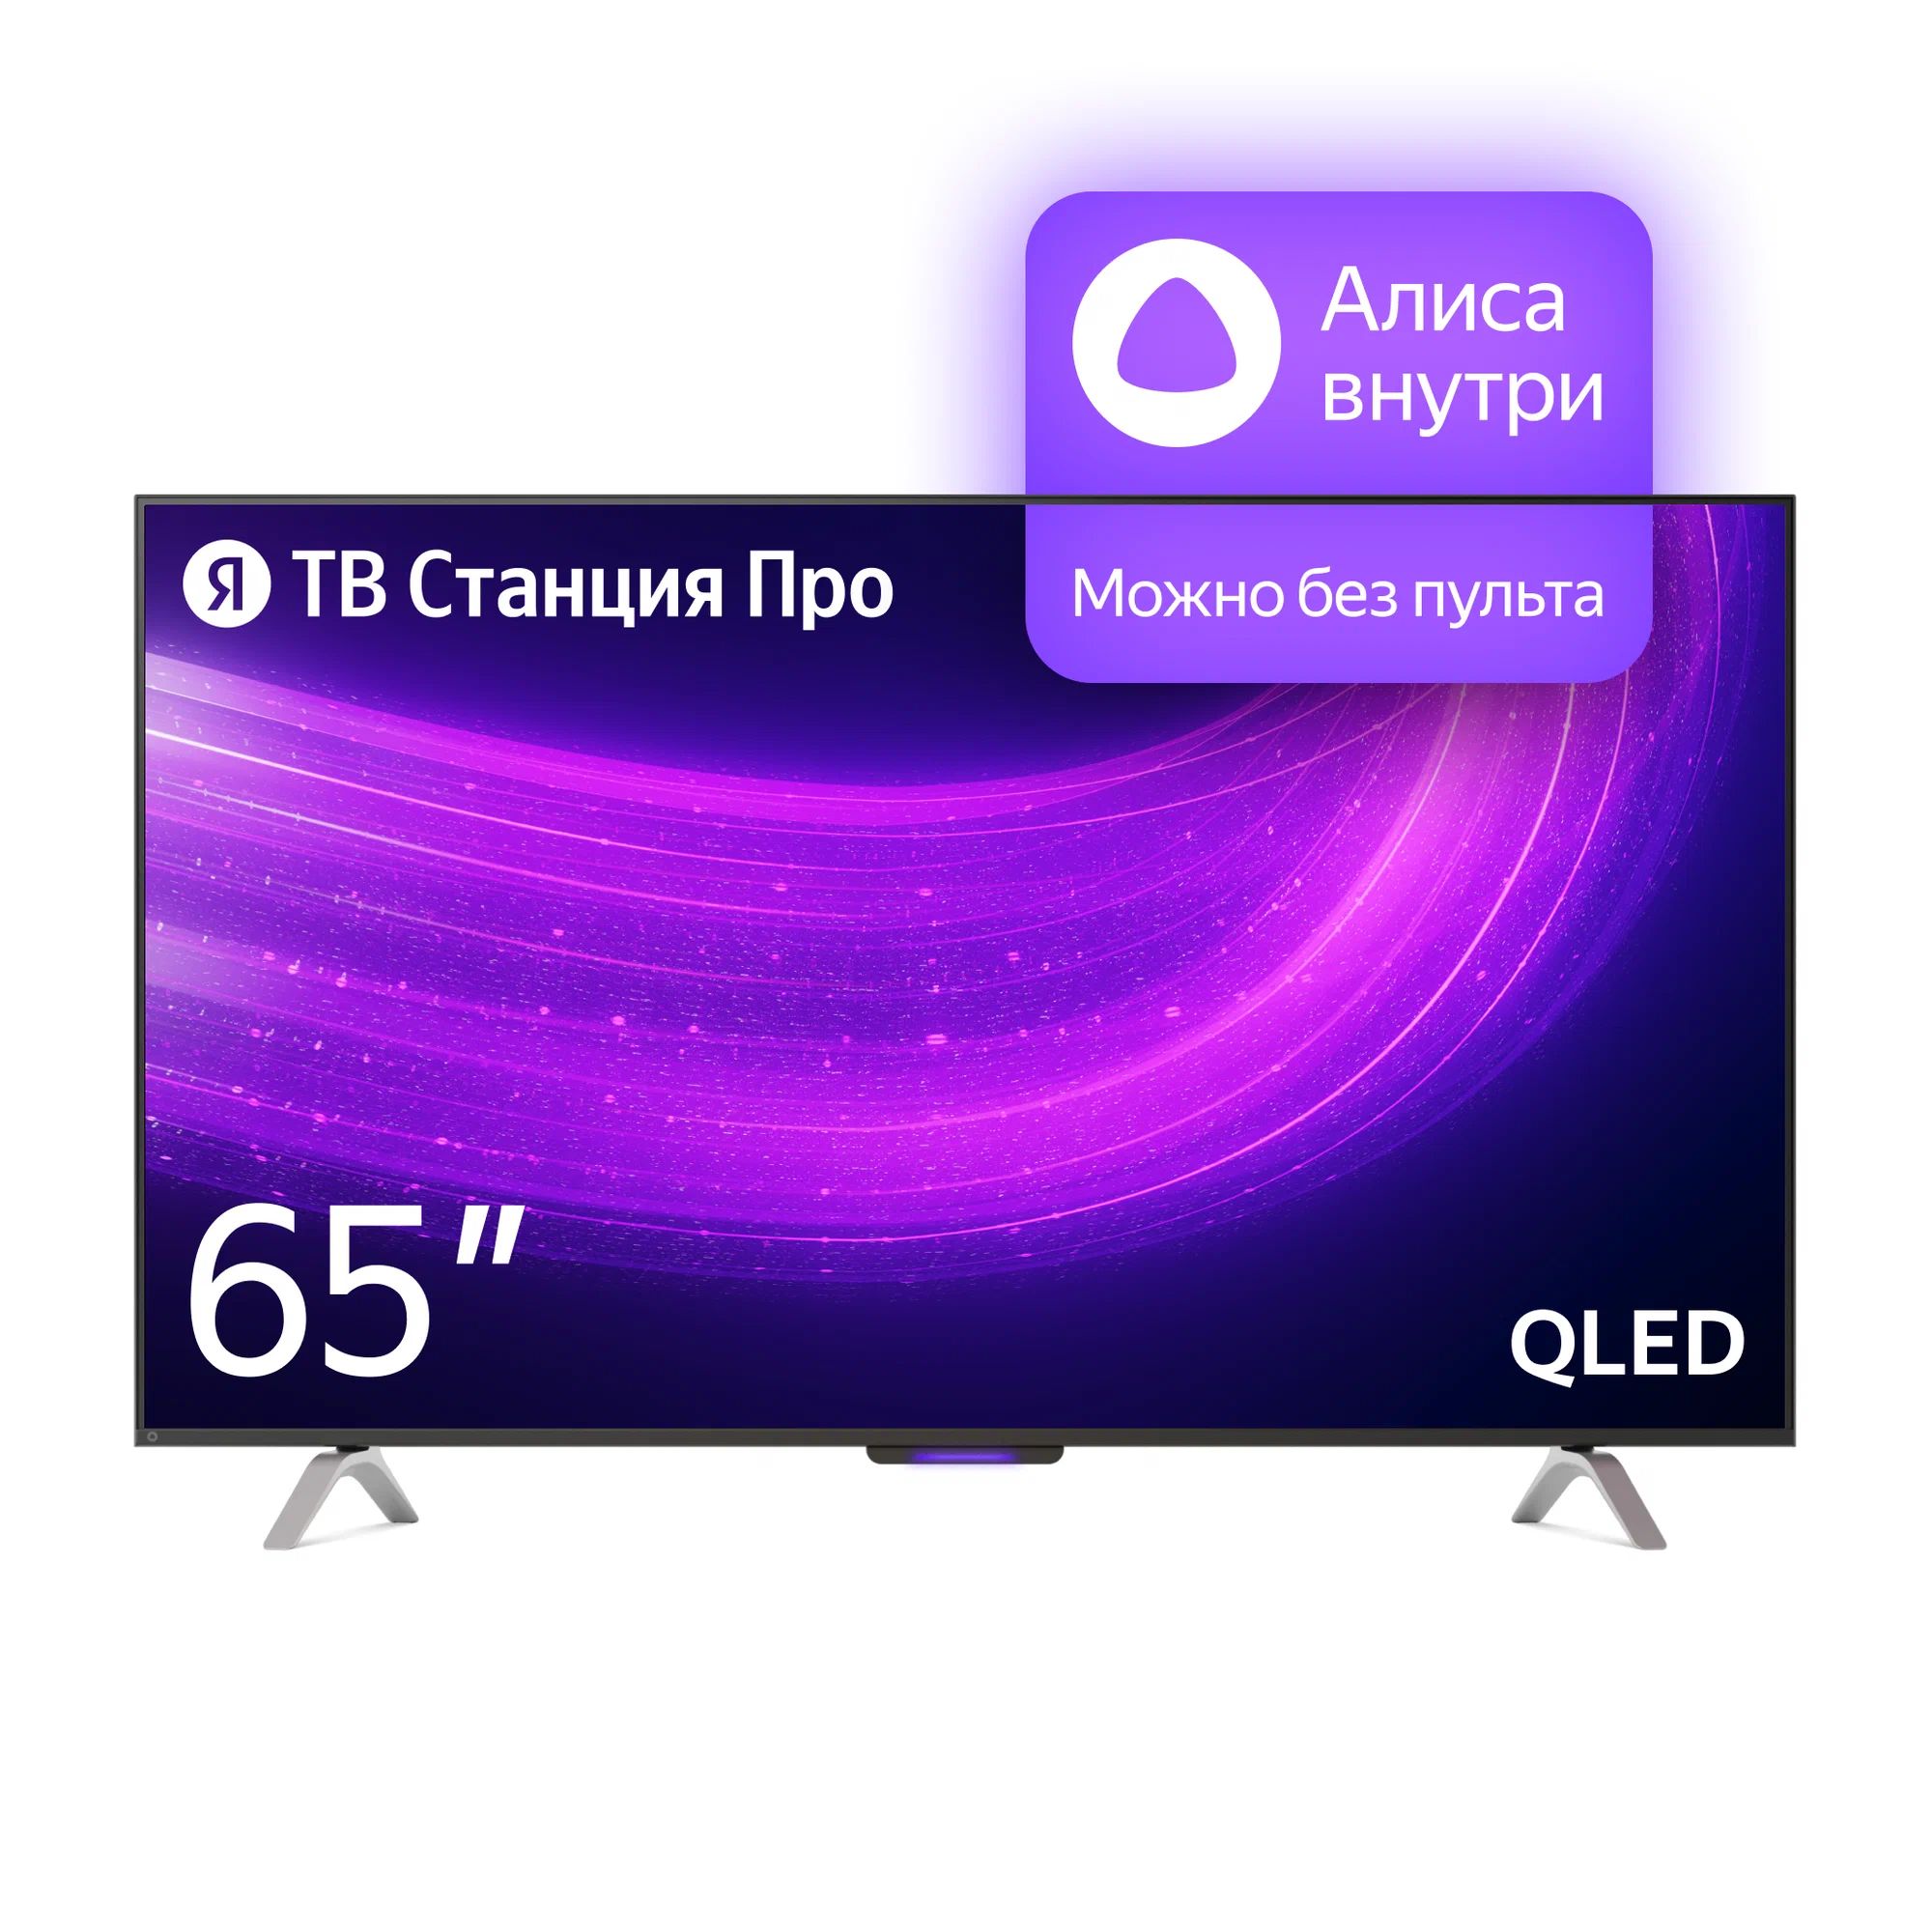 Телевизор Яндекс YNDX-00102 PRO Тв станция с Алисой 65 цена и фото